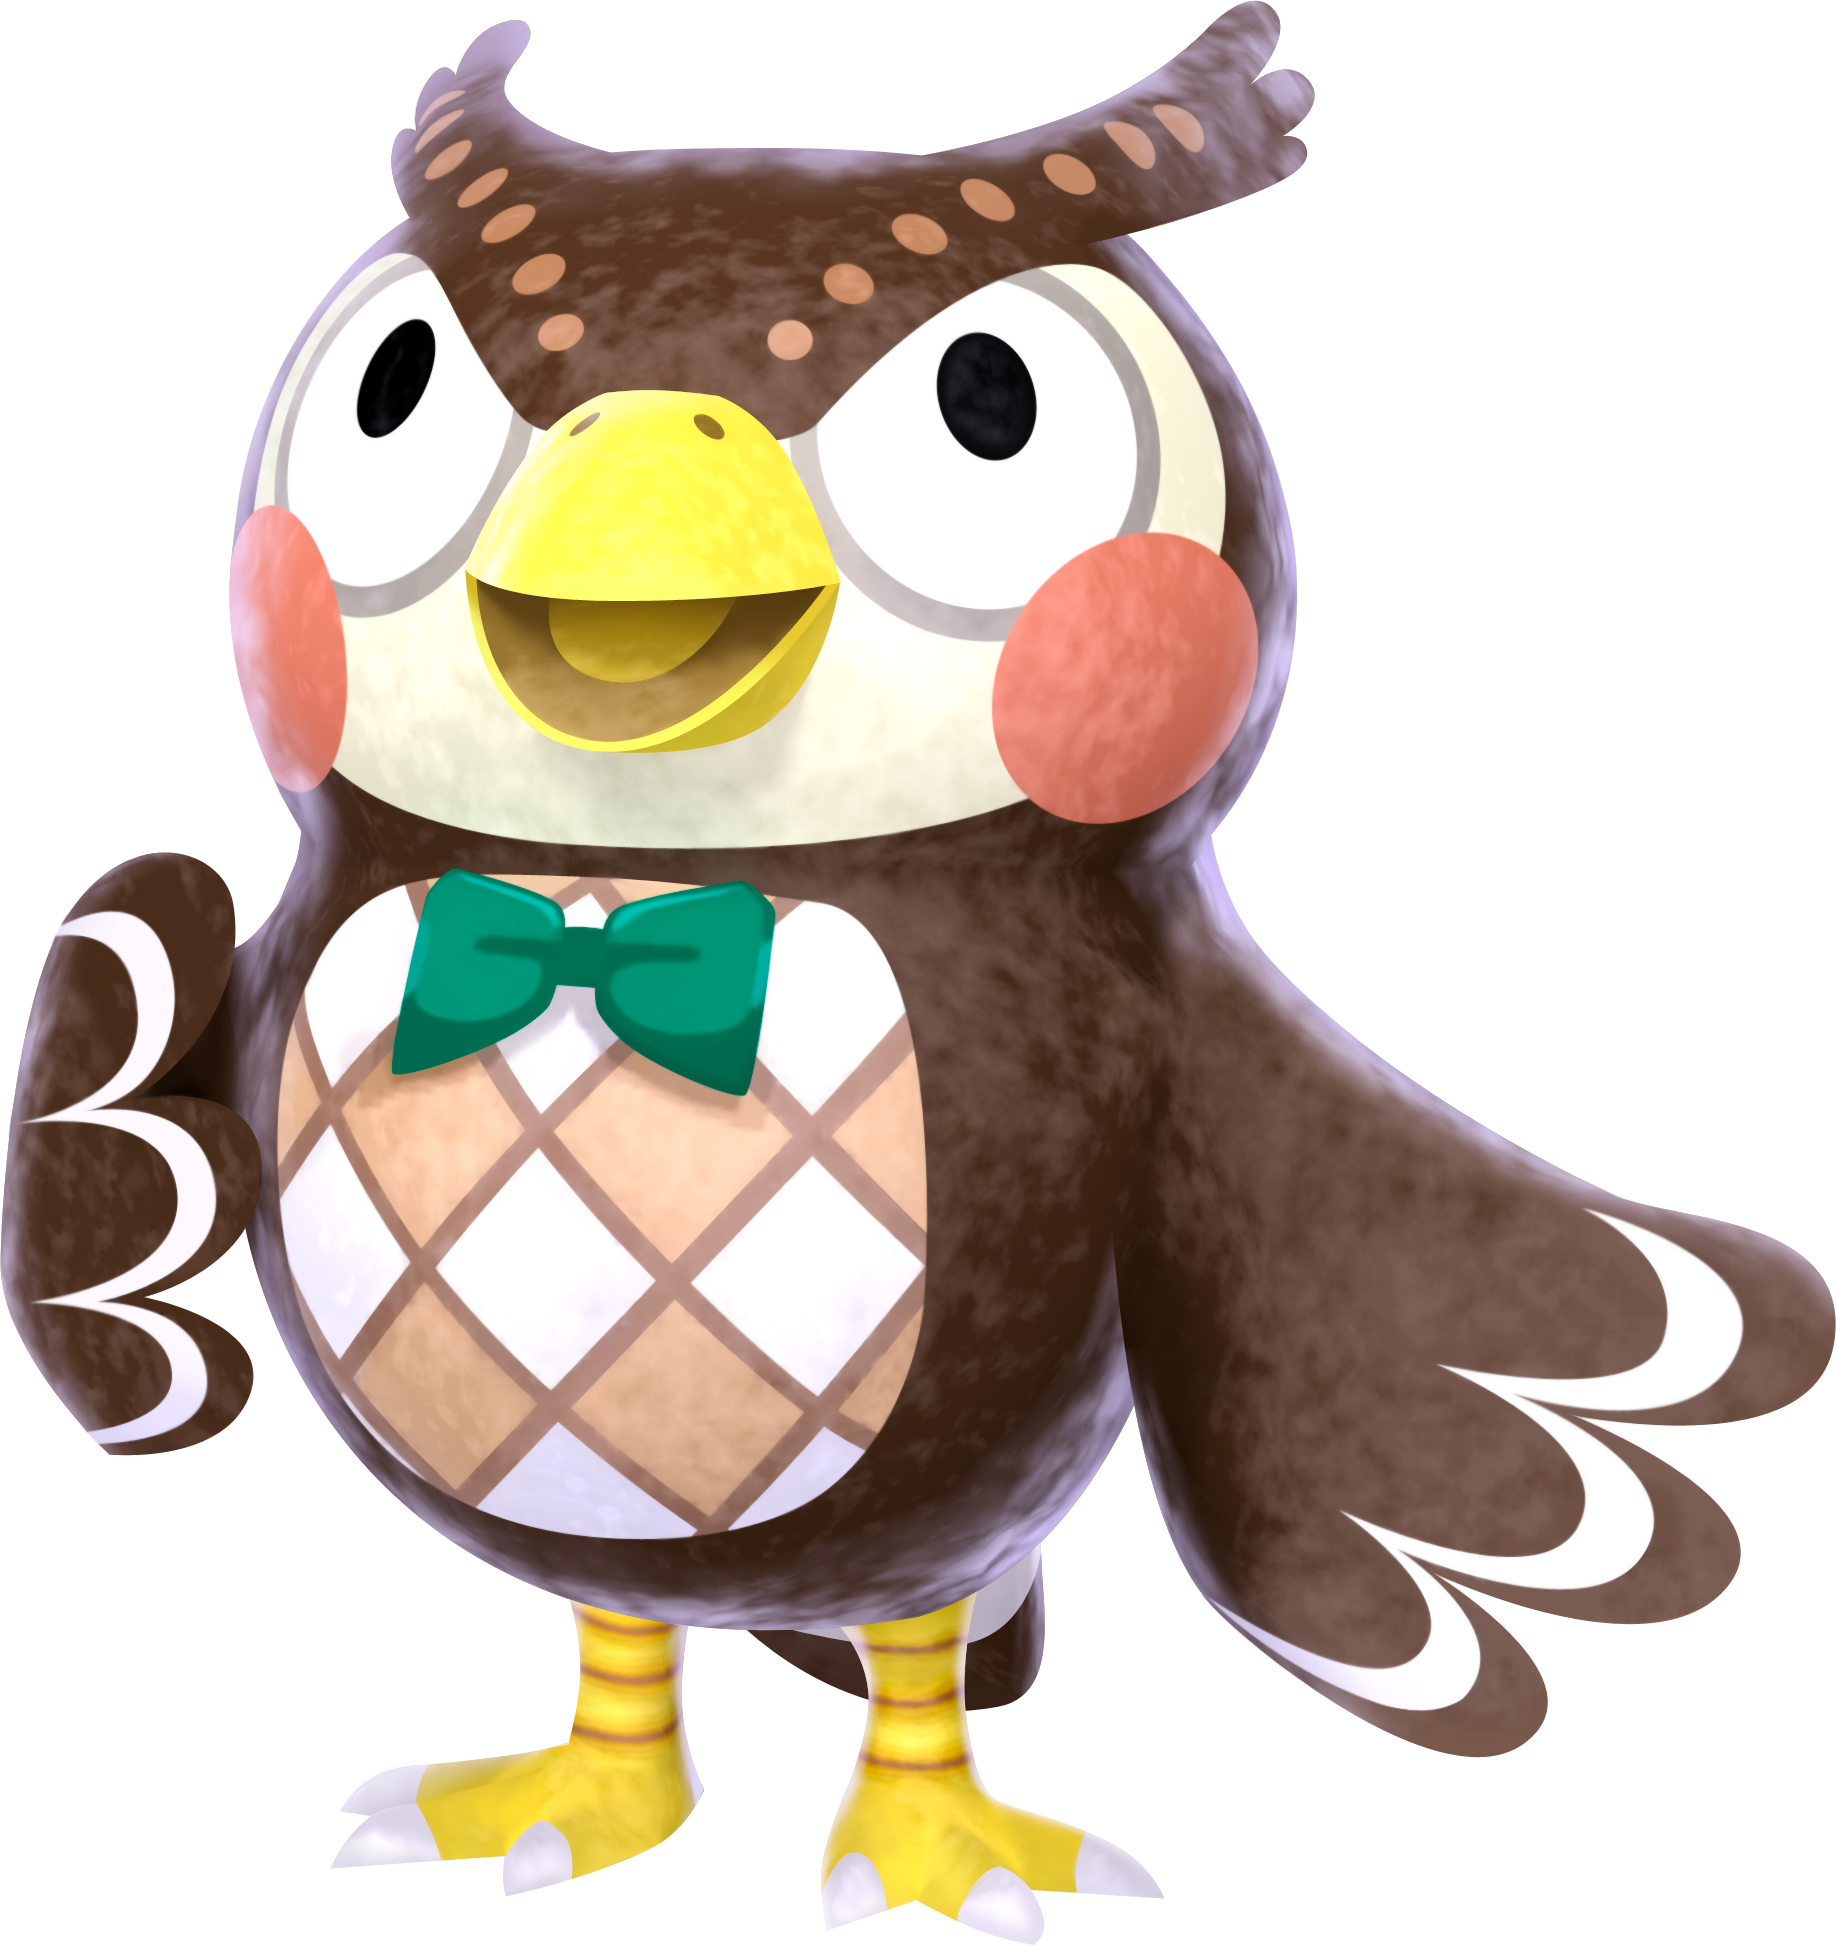 A Cartoon Owl With A Bow Tie